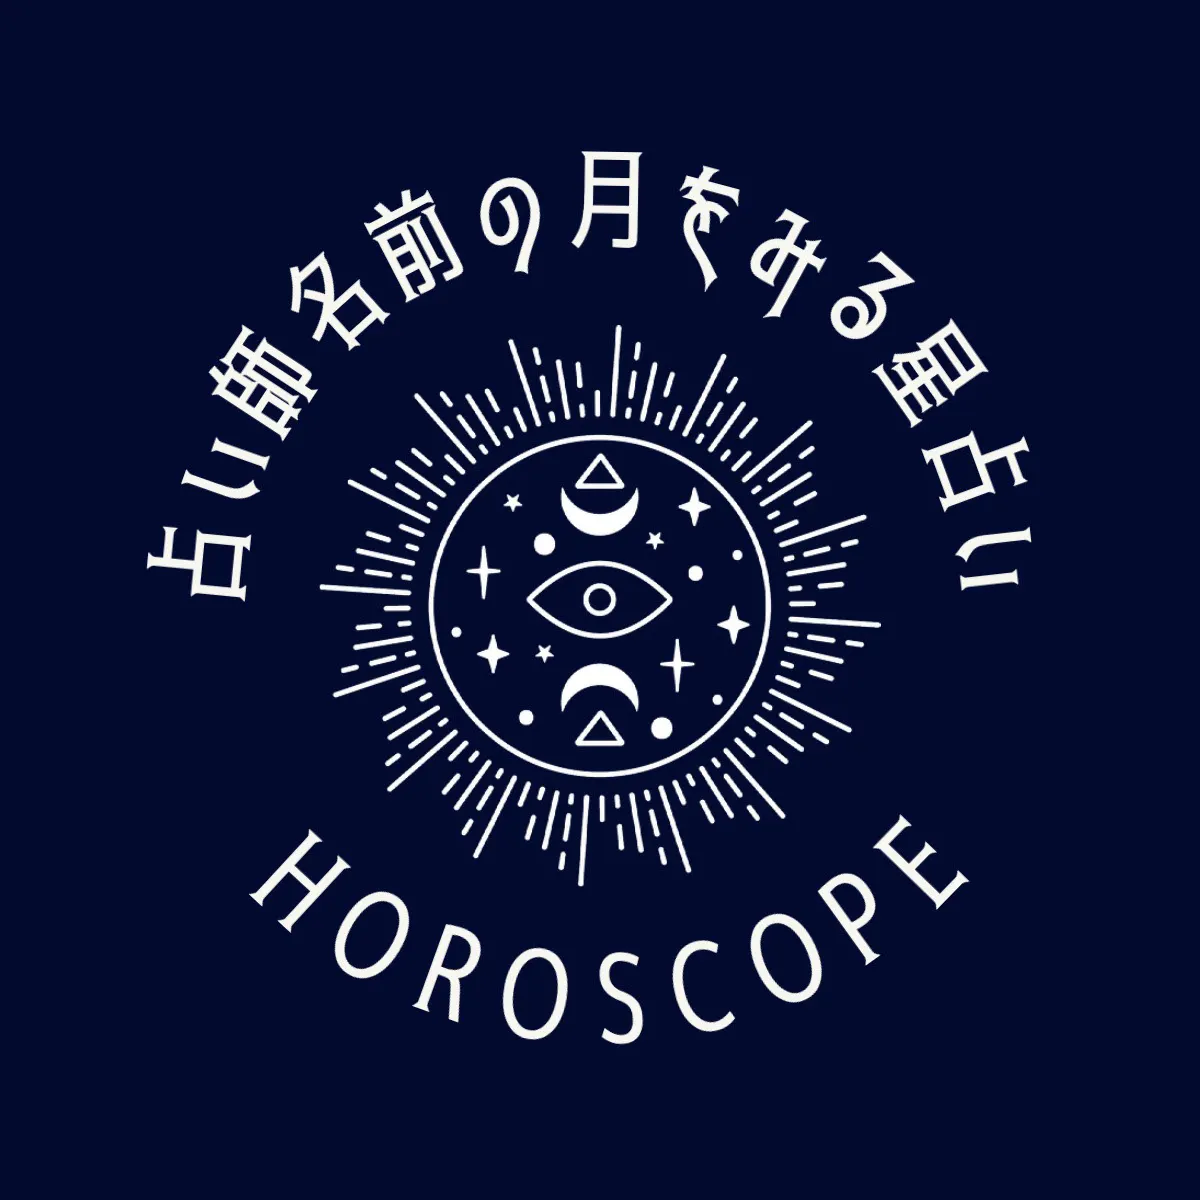 navy and white horoscope circle logo